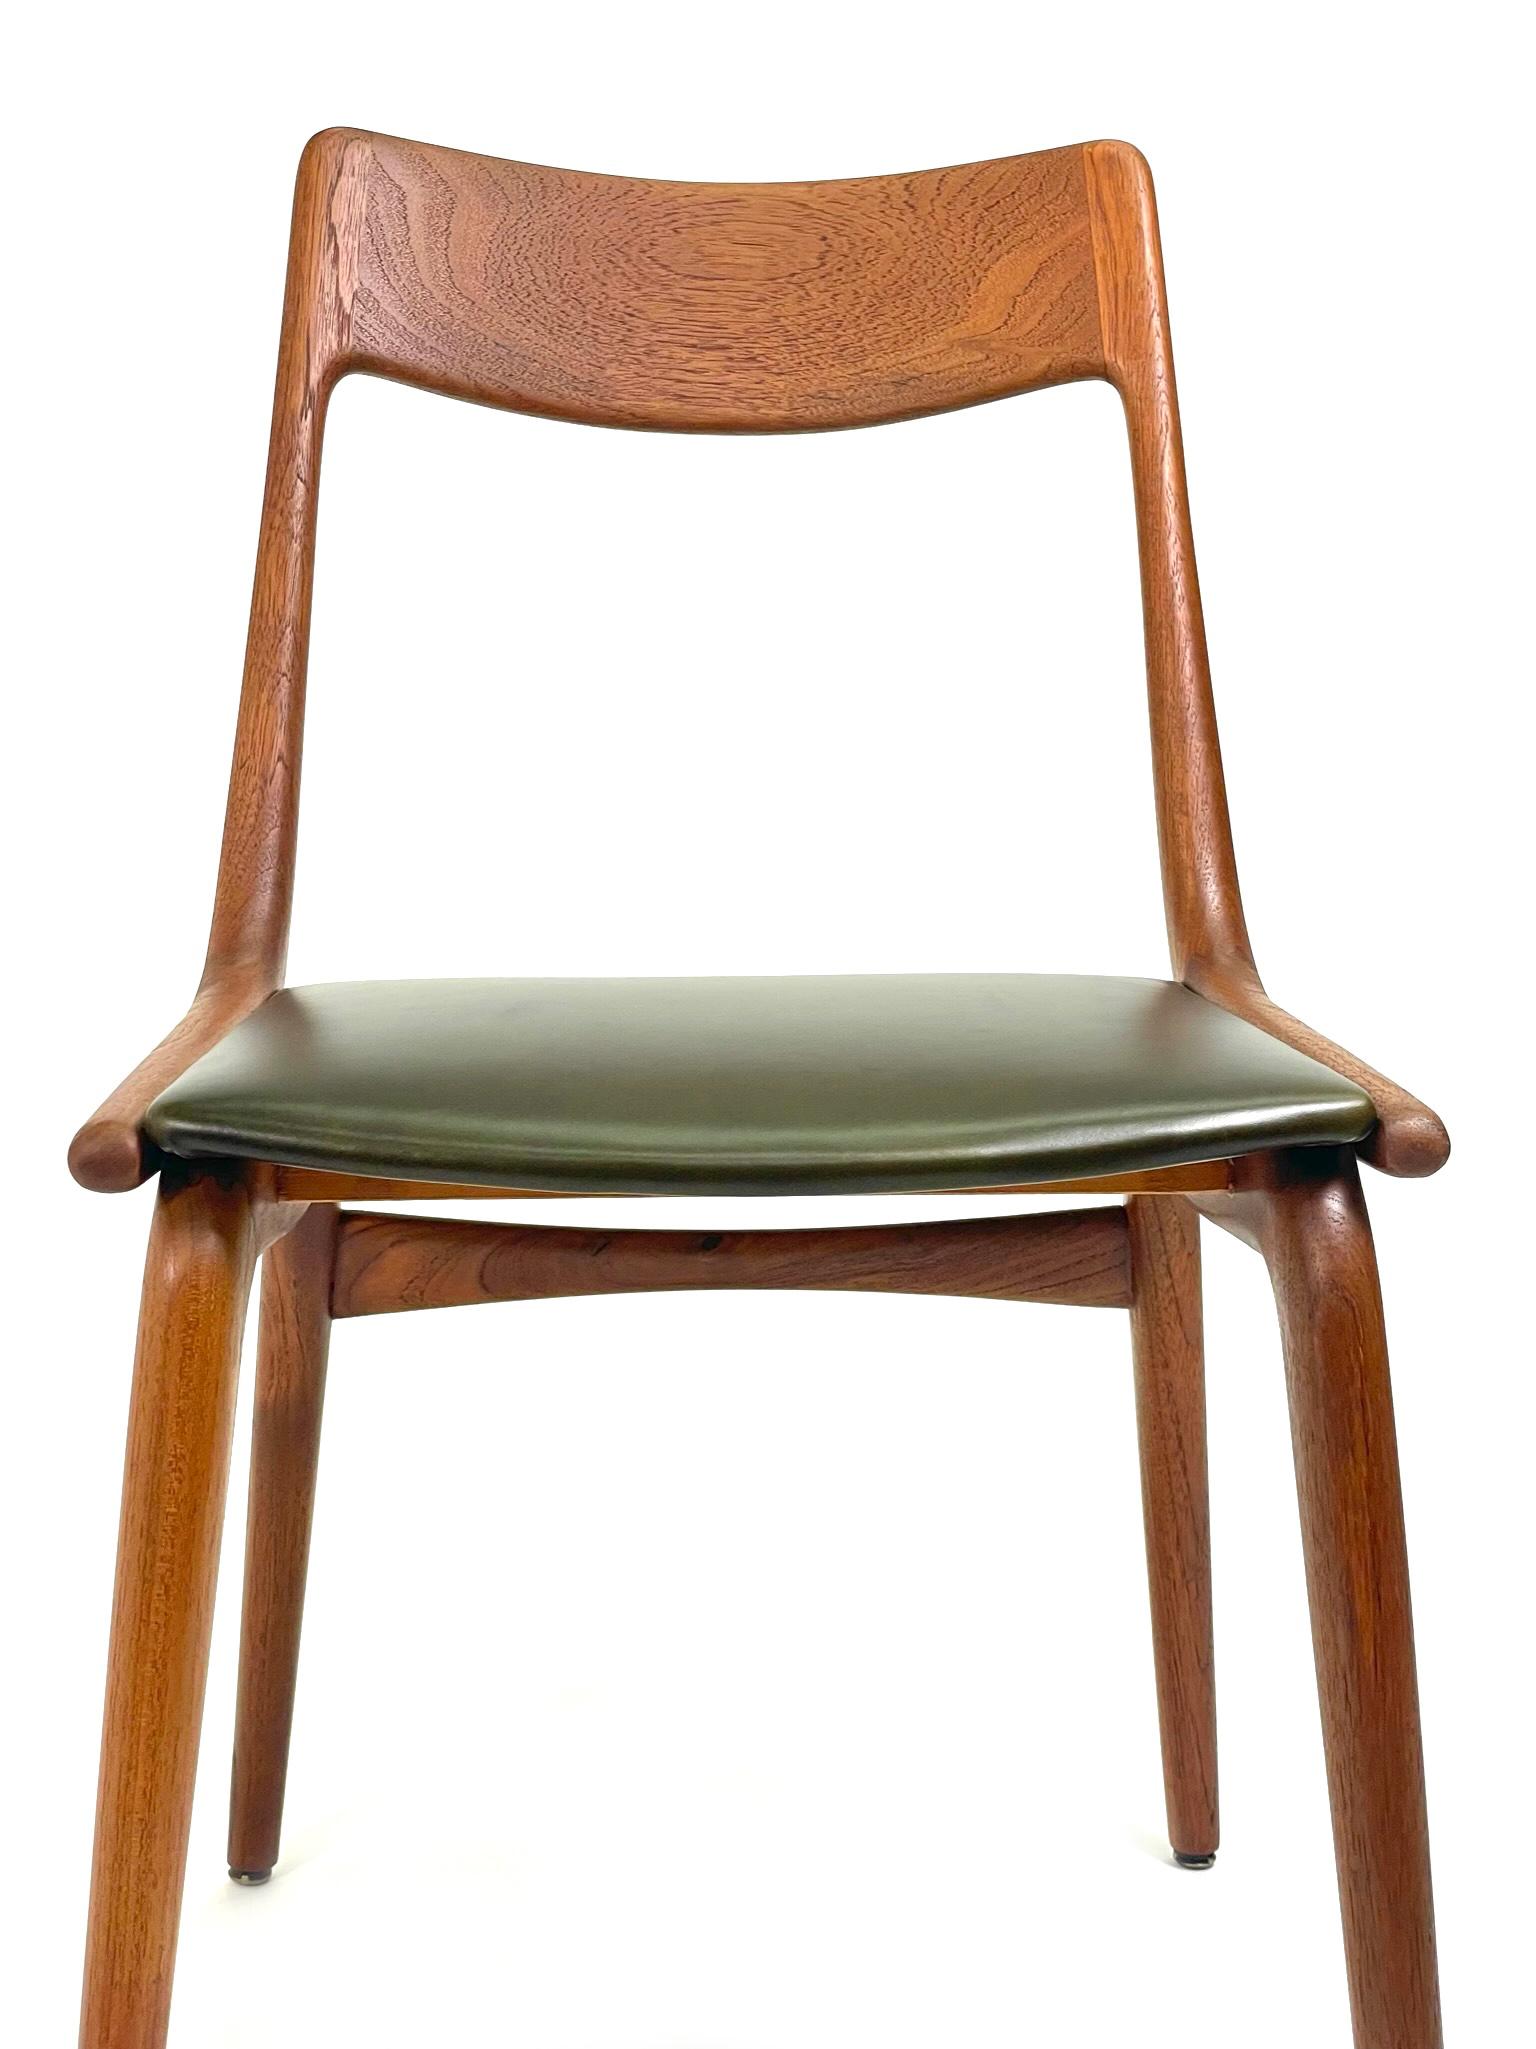 Set of 4 Boomerang Dining Chairs by Alfred Christensen for Slagelse Møbelværk in 1